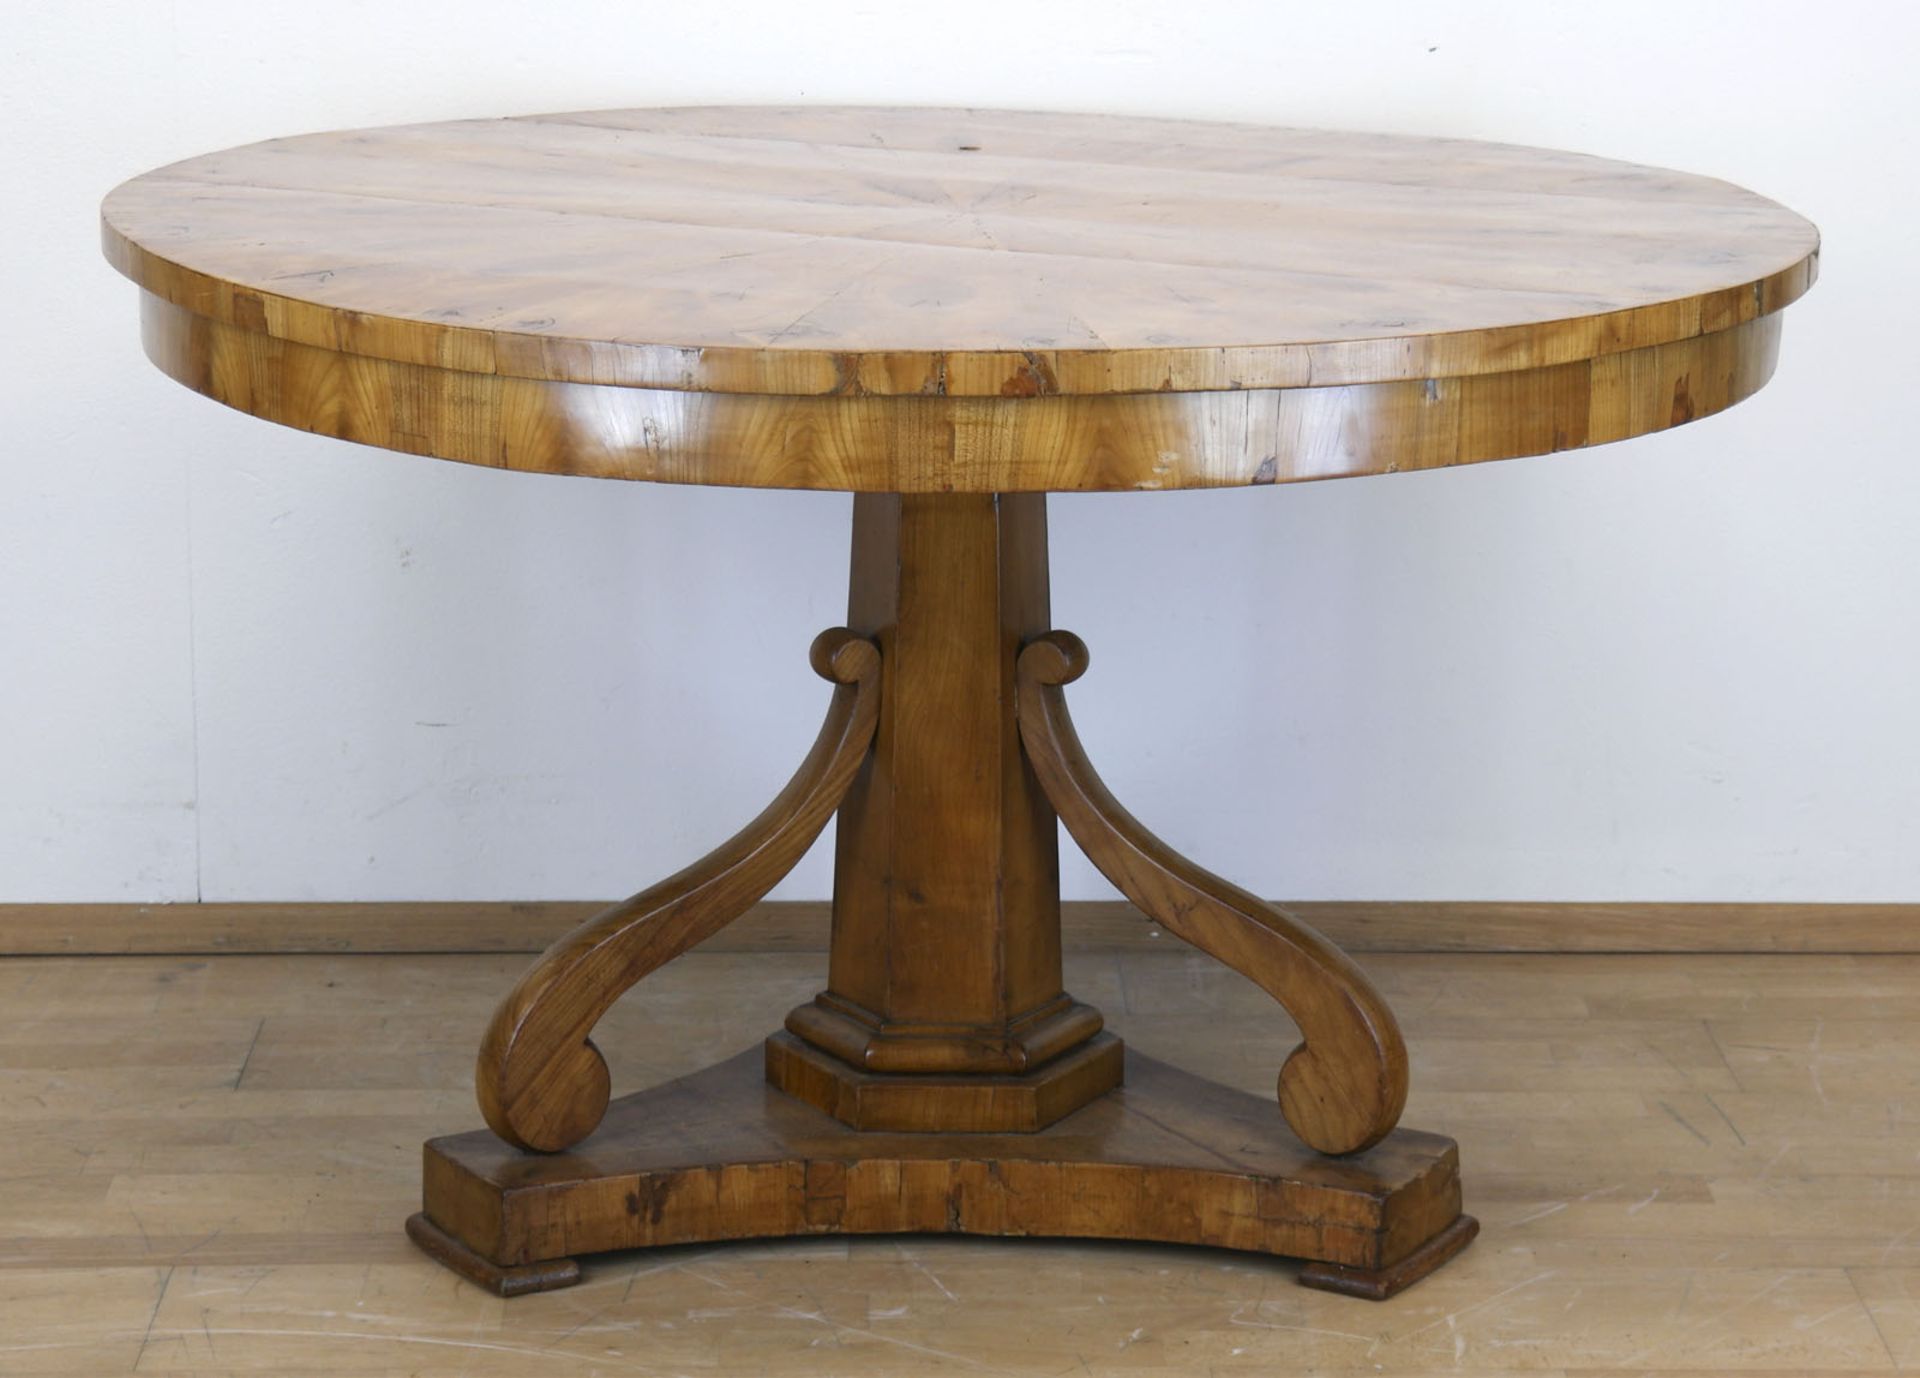 Biedermeier-Tisch, Kirsche furniert, über 3-passig eingebogter Fußplatte 6-kantige Säule mit 3 Volu